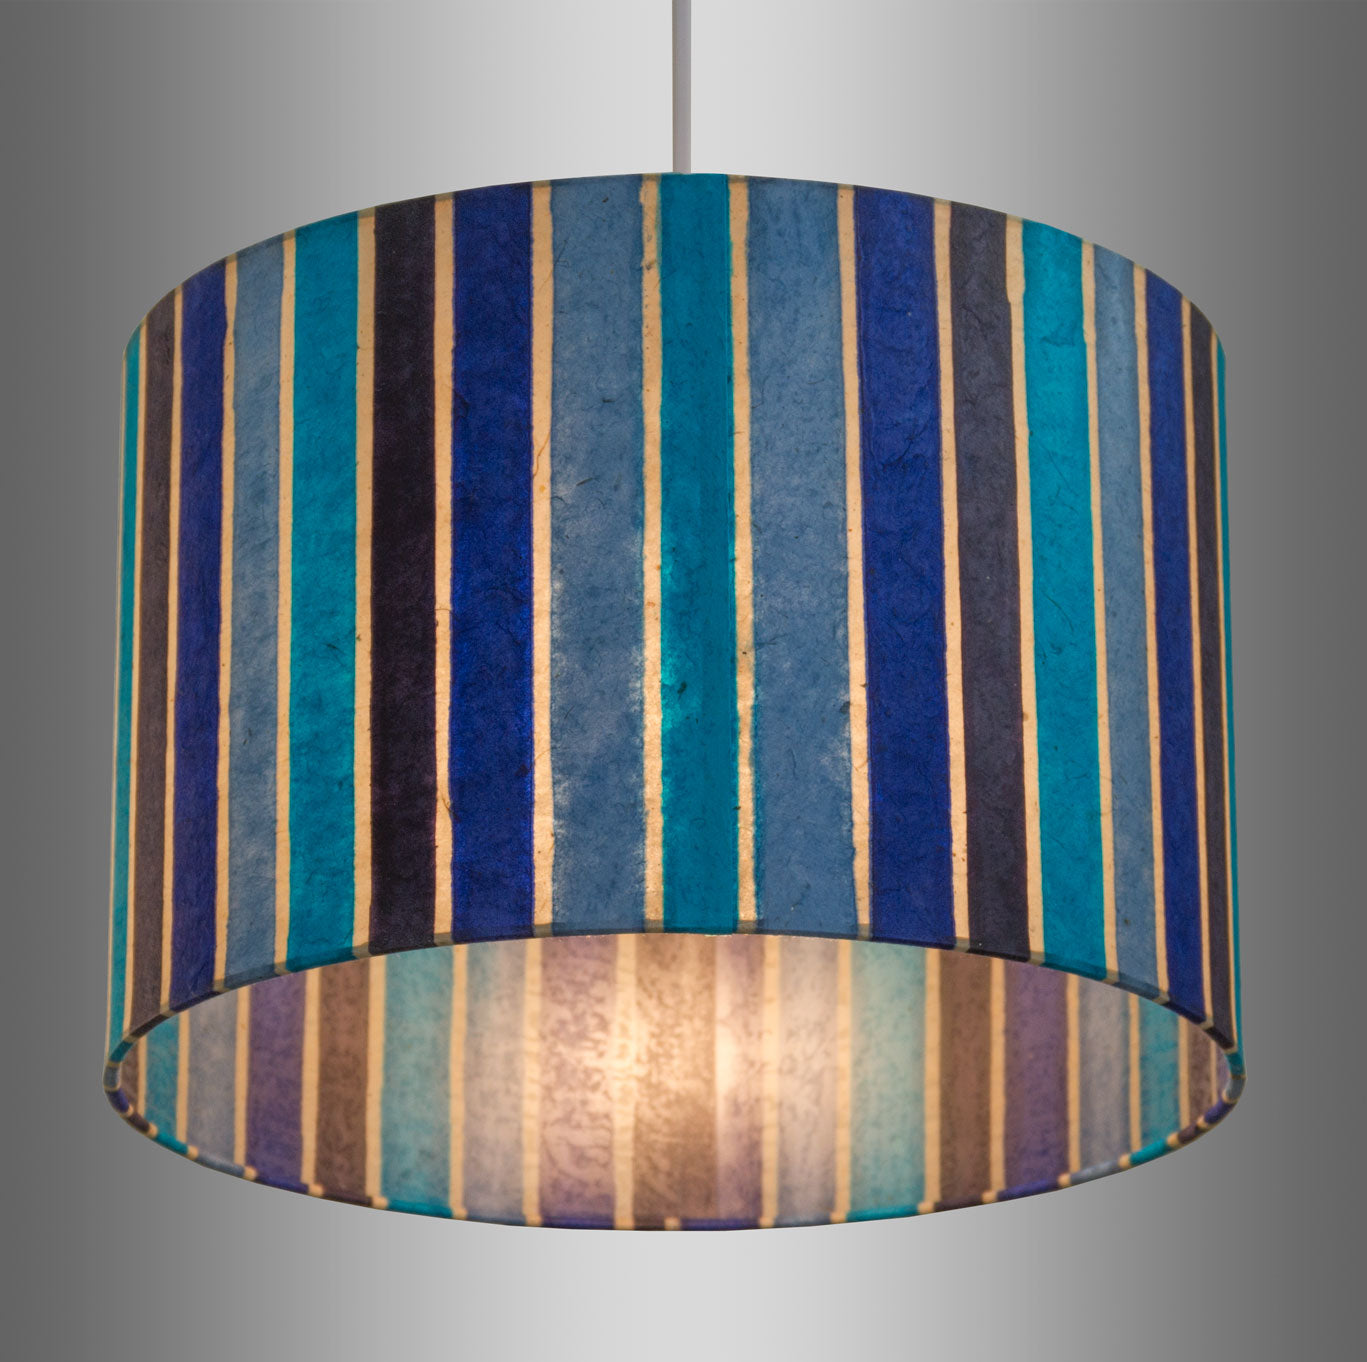 3 Tier Lamp Shade - P05 - Batik Stripes Blue, 40cm x 20cm, 30cm x 17.5cm & 20cm x 15cm